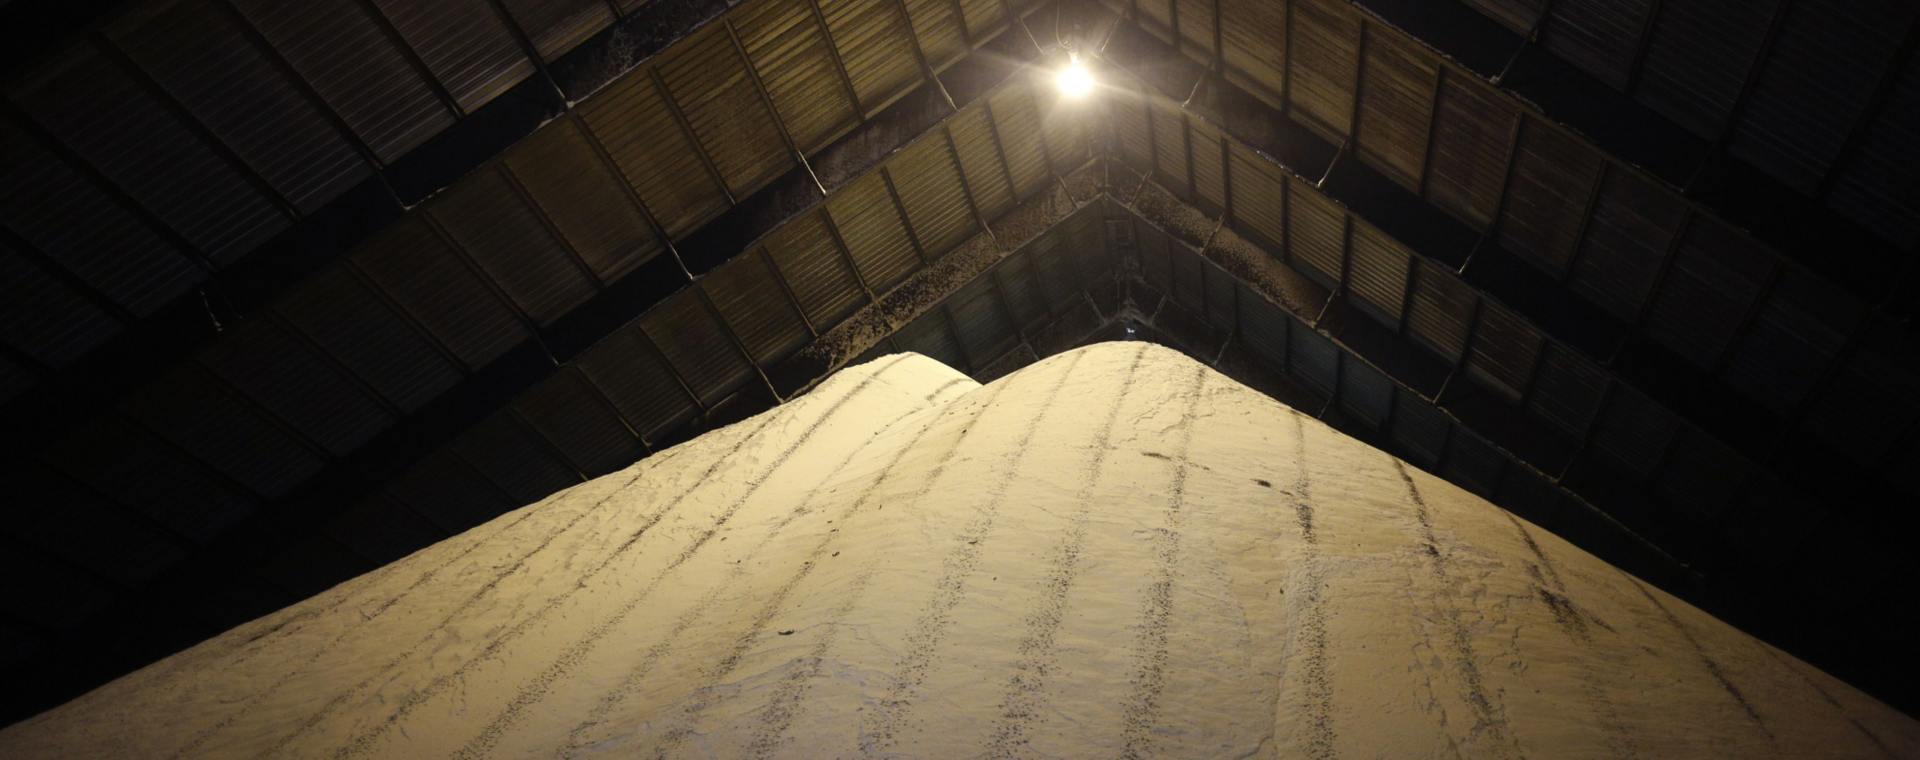 Tumpukan gula  mentah berada di dalam gudang setelah diproses di pabrik Lafourche Sugar LLC di Thibodaux, Louisiana, AS.  - Bloomberg. Kuota Impor Gula Mentah Bertambah di Tengah Ketatnya Pasokan Global